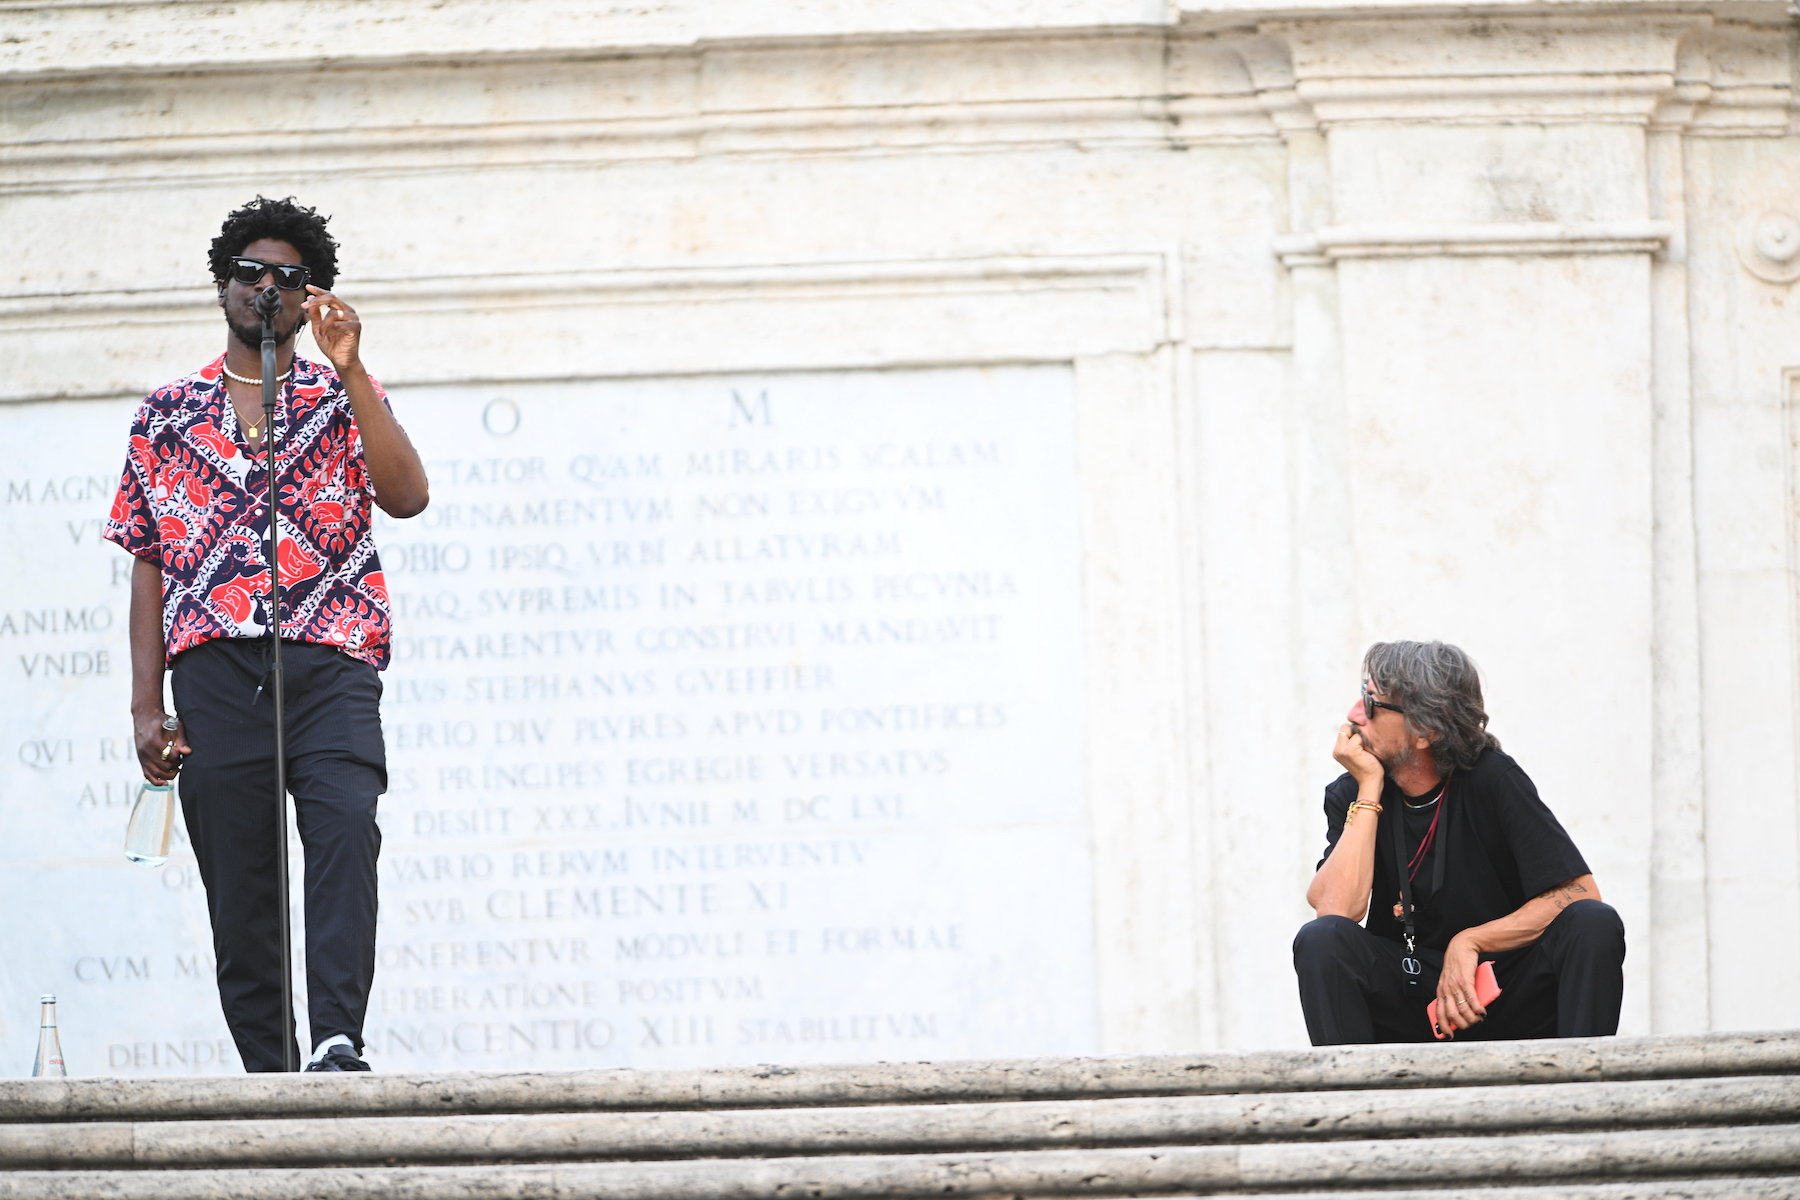  Labrinth and Pierpaolo Piccioli at Rome's Piazza di Spagna.